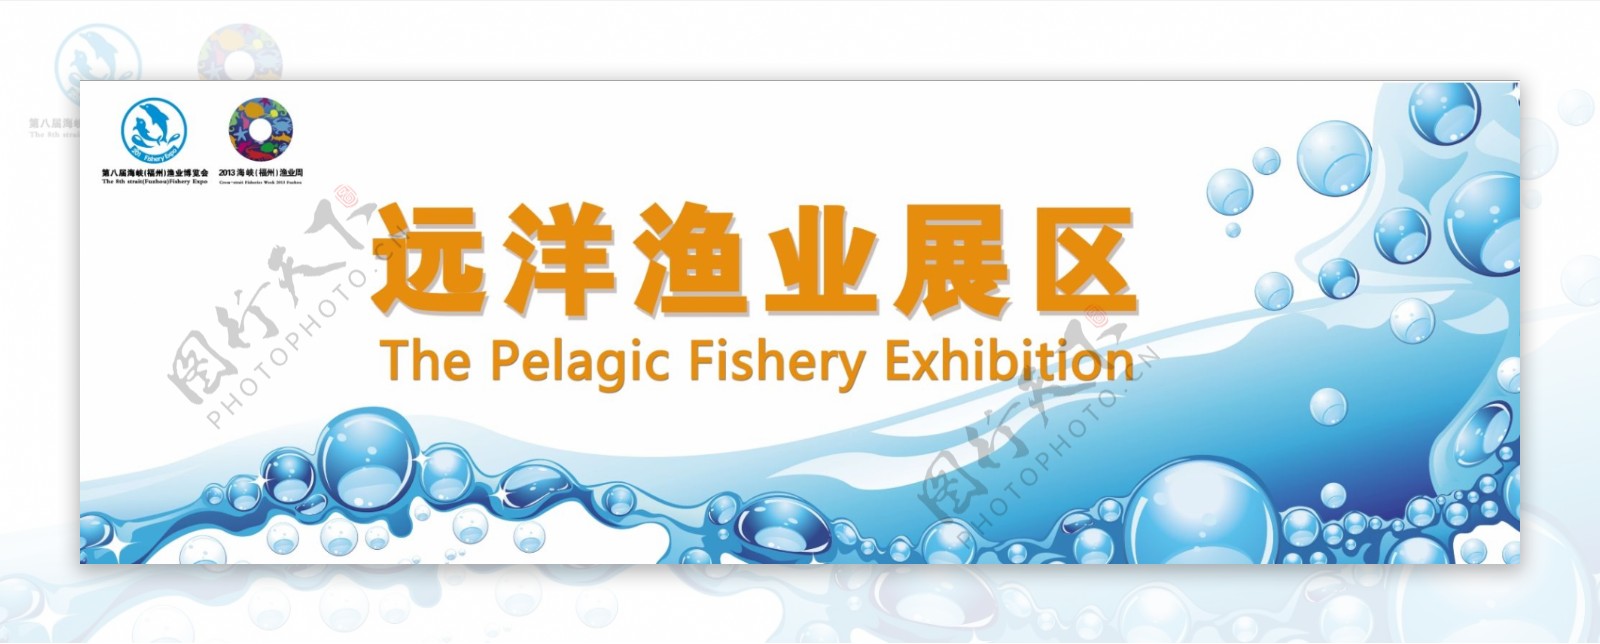 福州渔博会远洋渔业展区